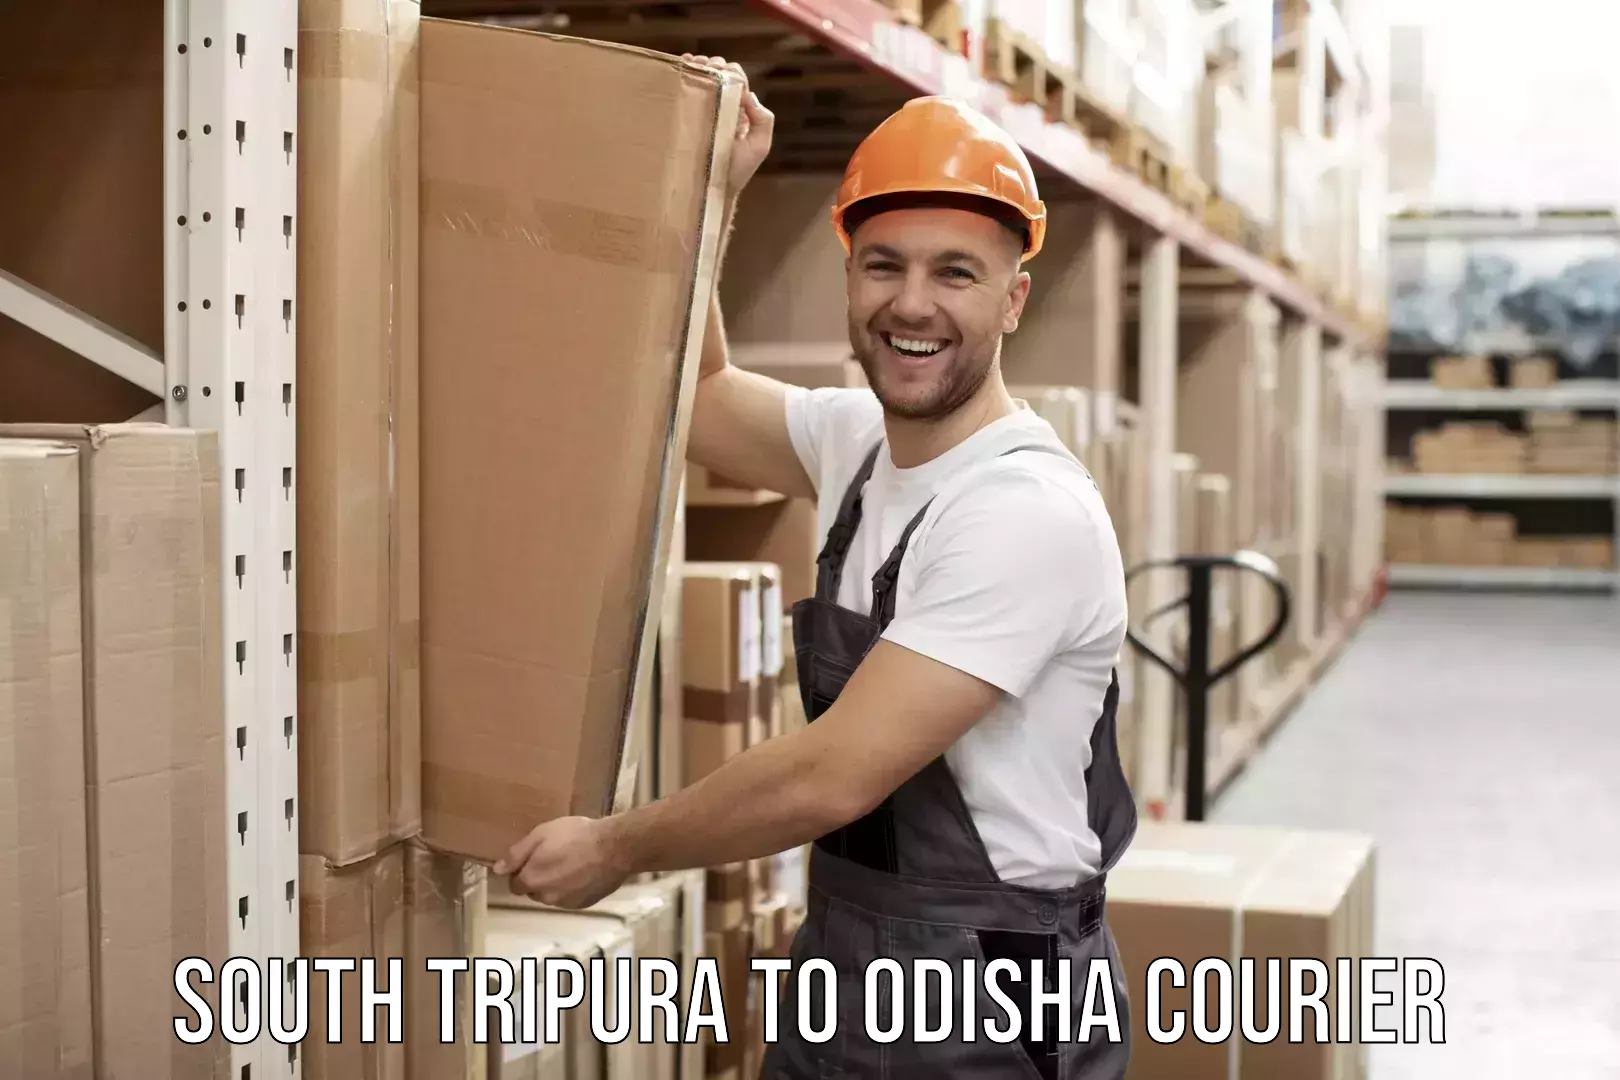 Furniture moving experts South Tripura to Astaranga